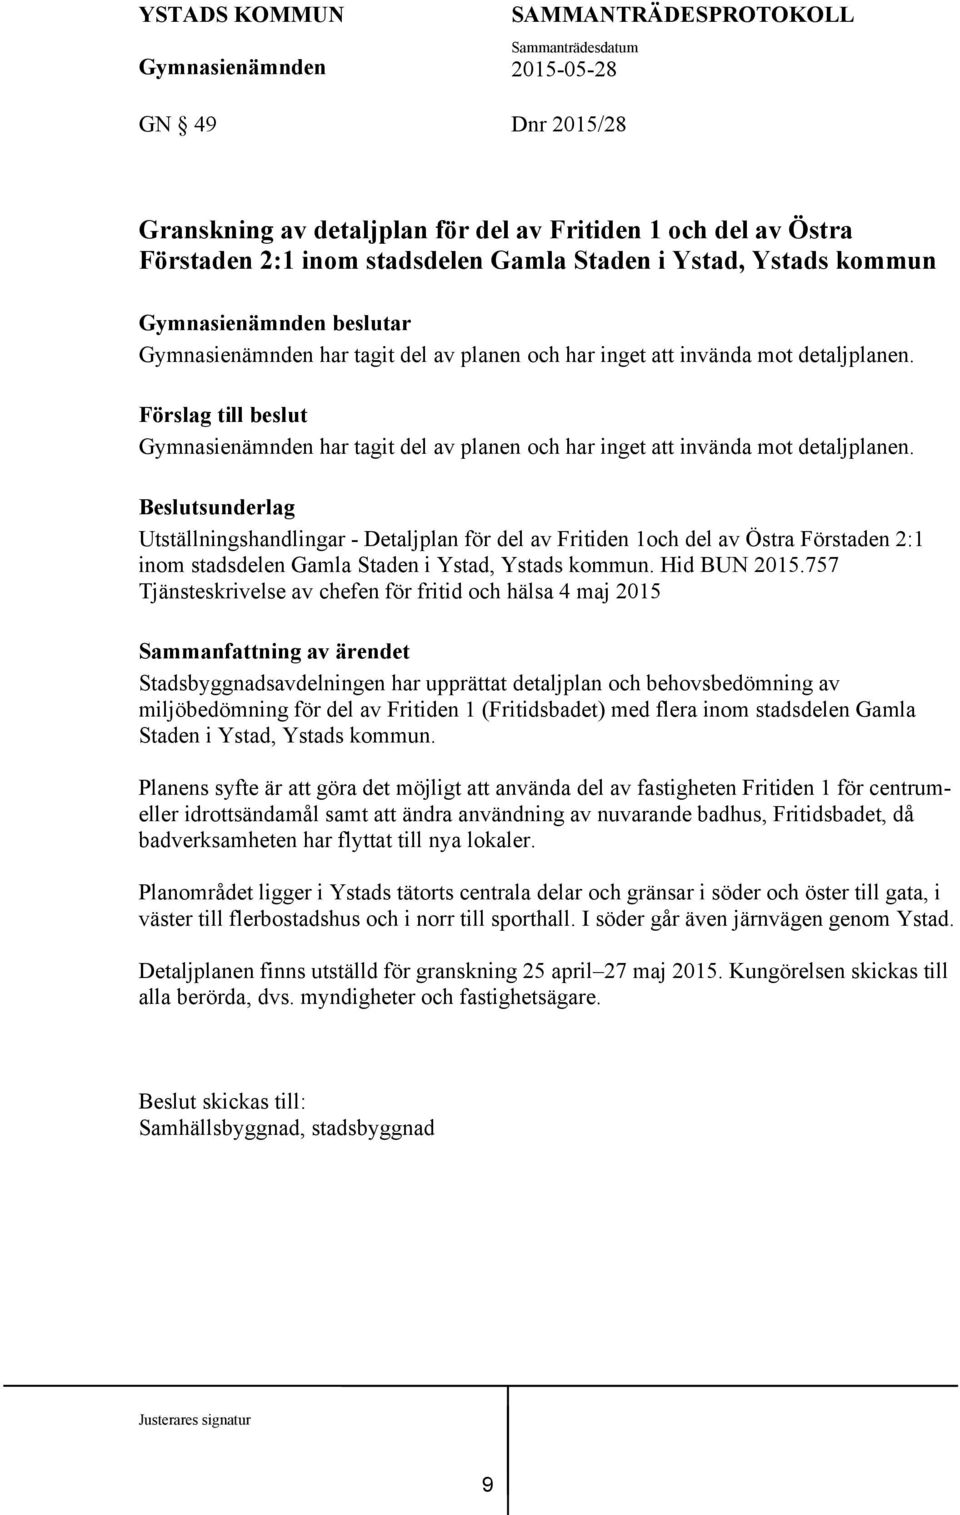 Beslutsunderlag Utställningshandlingar - Detaljplan för del av Fritiden 1och del av Östra Förstaden 2:1 inom stadsdelen Gamla Staden i Ystad, Ystads kommun. Hid BUN 2015.